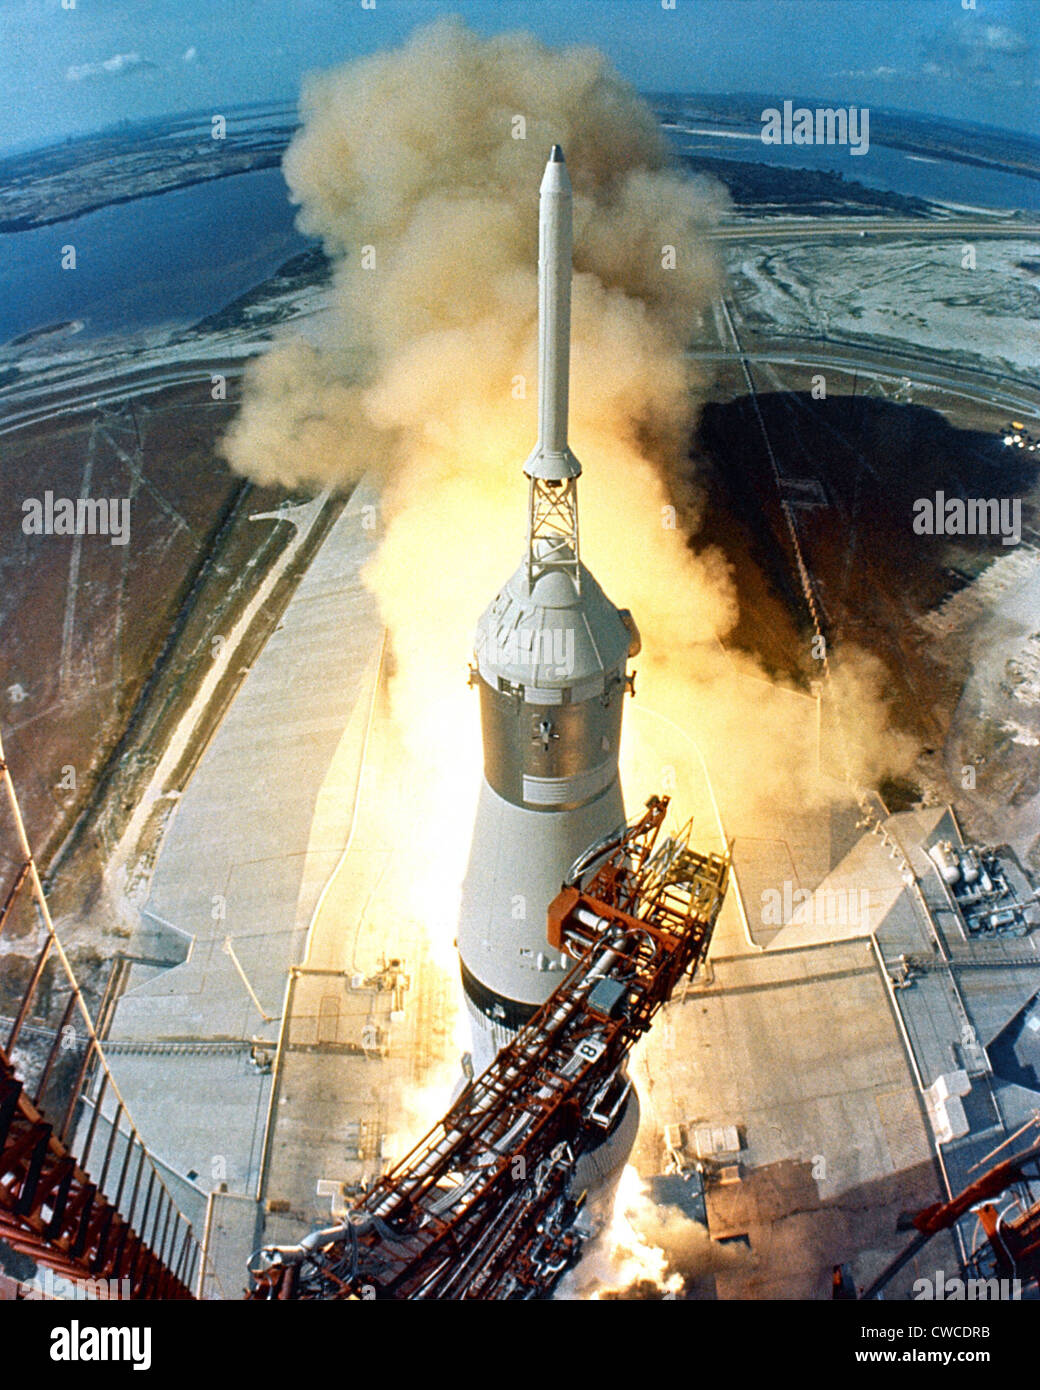 Lancio della luna. Il sollevamento verticale di Apollo 11 su di un Saturn V missile inizia la luna missione degli Astronauti Neil Armstrong, Michael Foto Stock